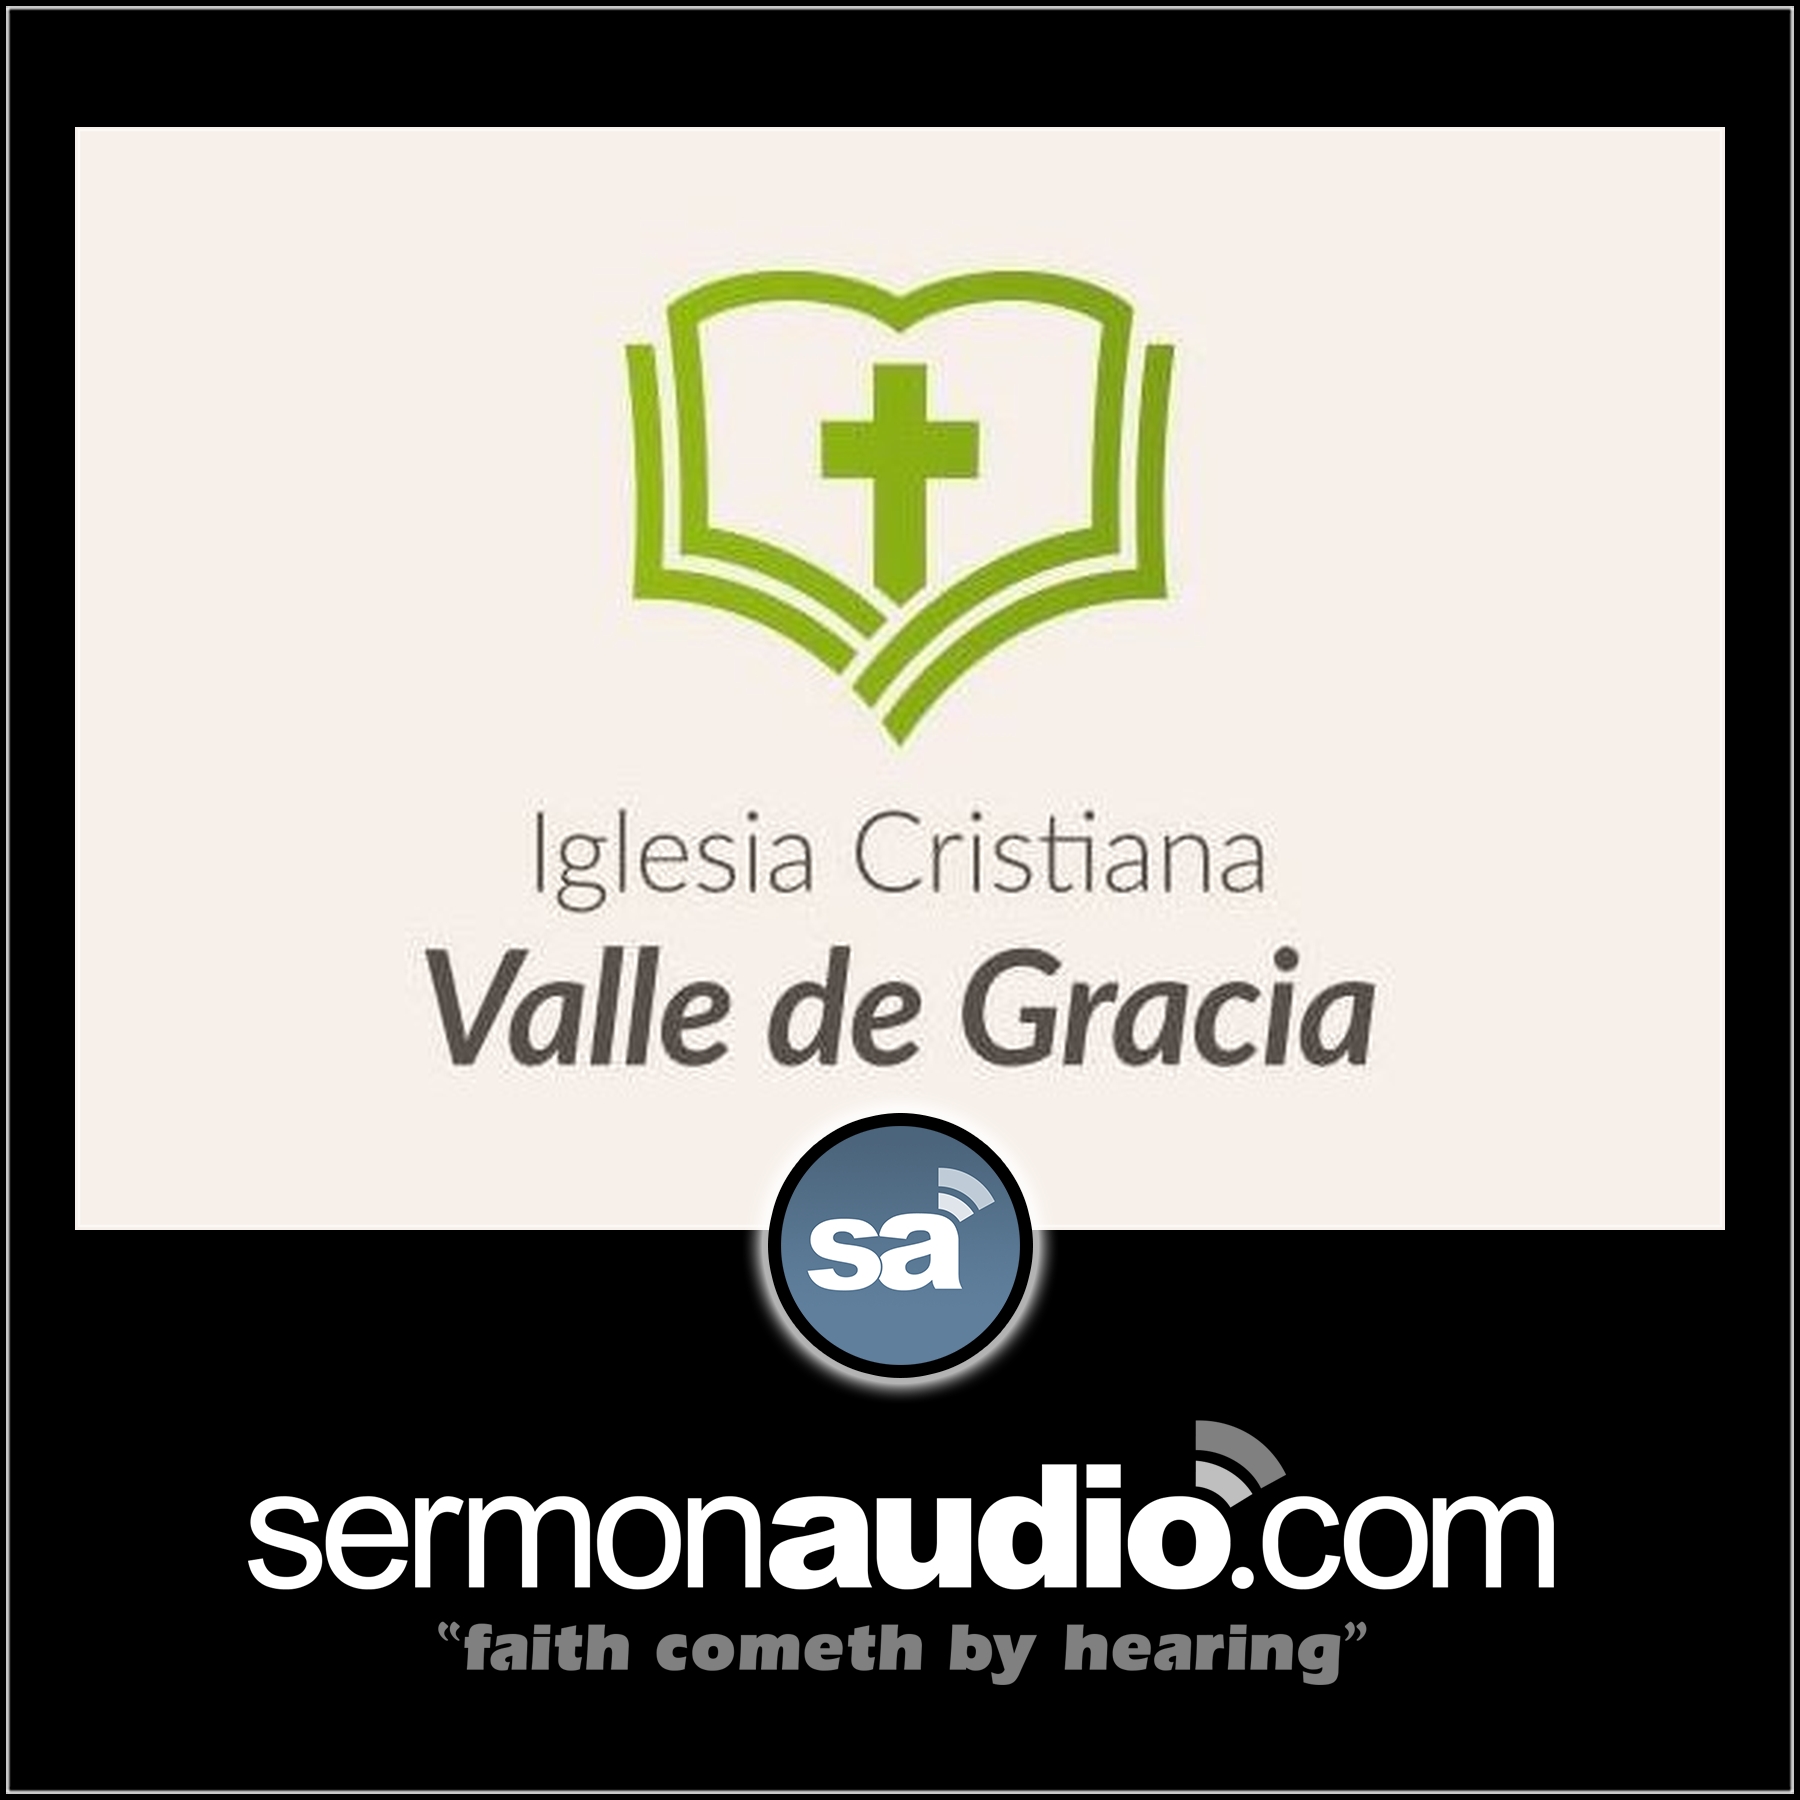 Iglesia Cristiana Valle de Gracia | SermonAudio